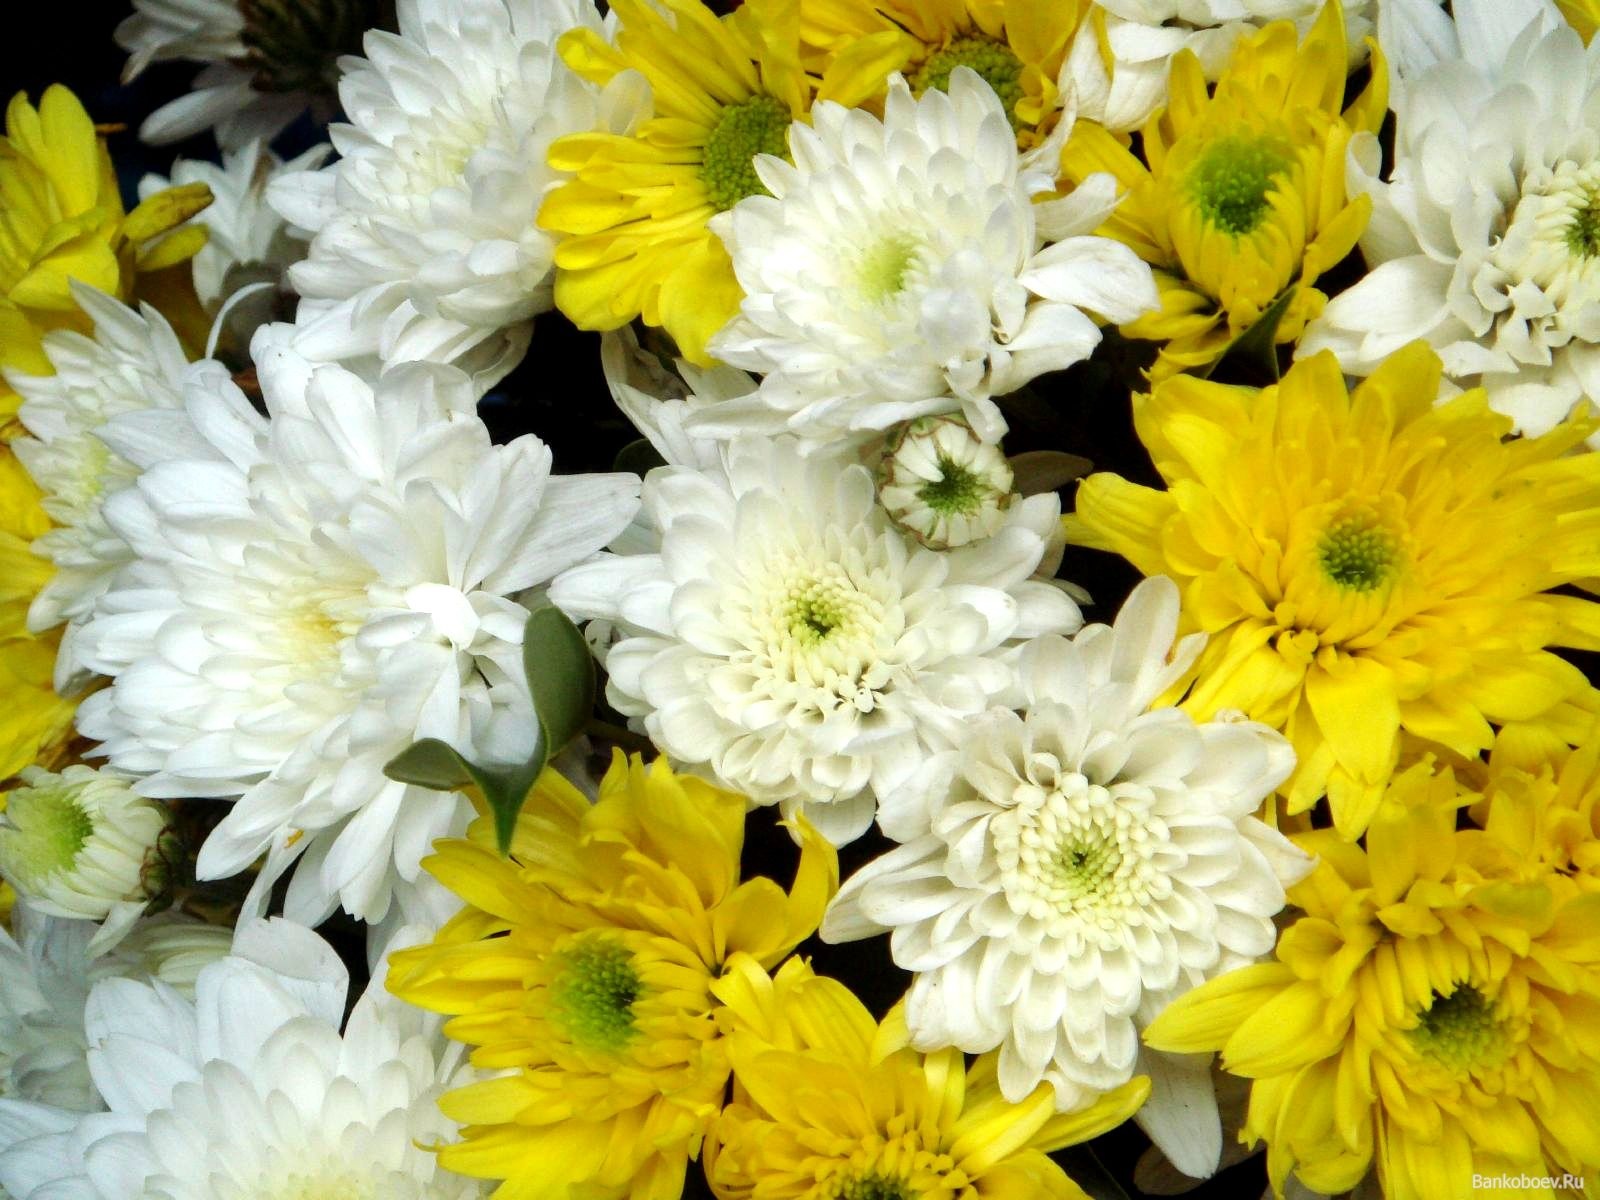 Сочетание белых и желтых хризантем в одном букете